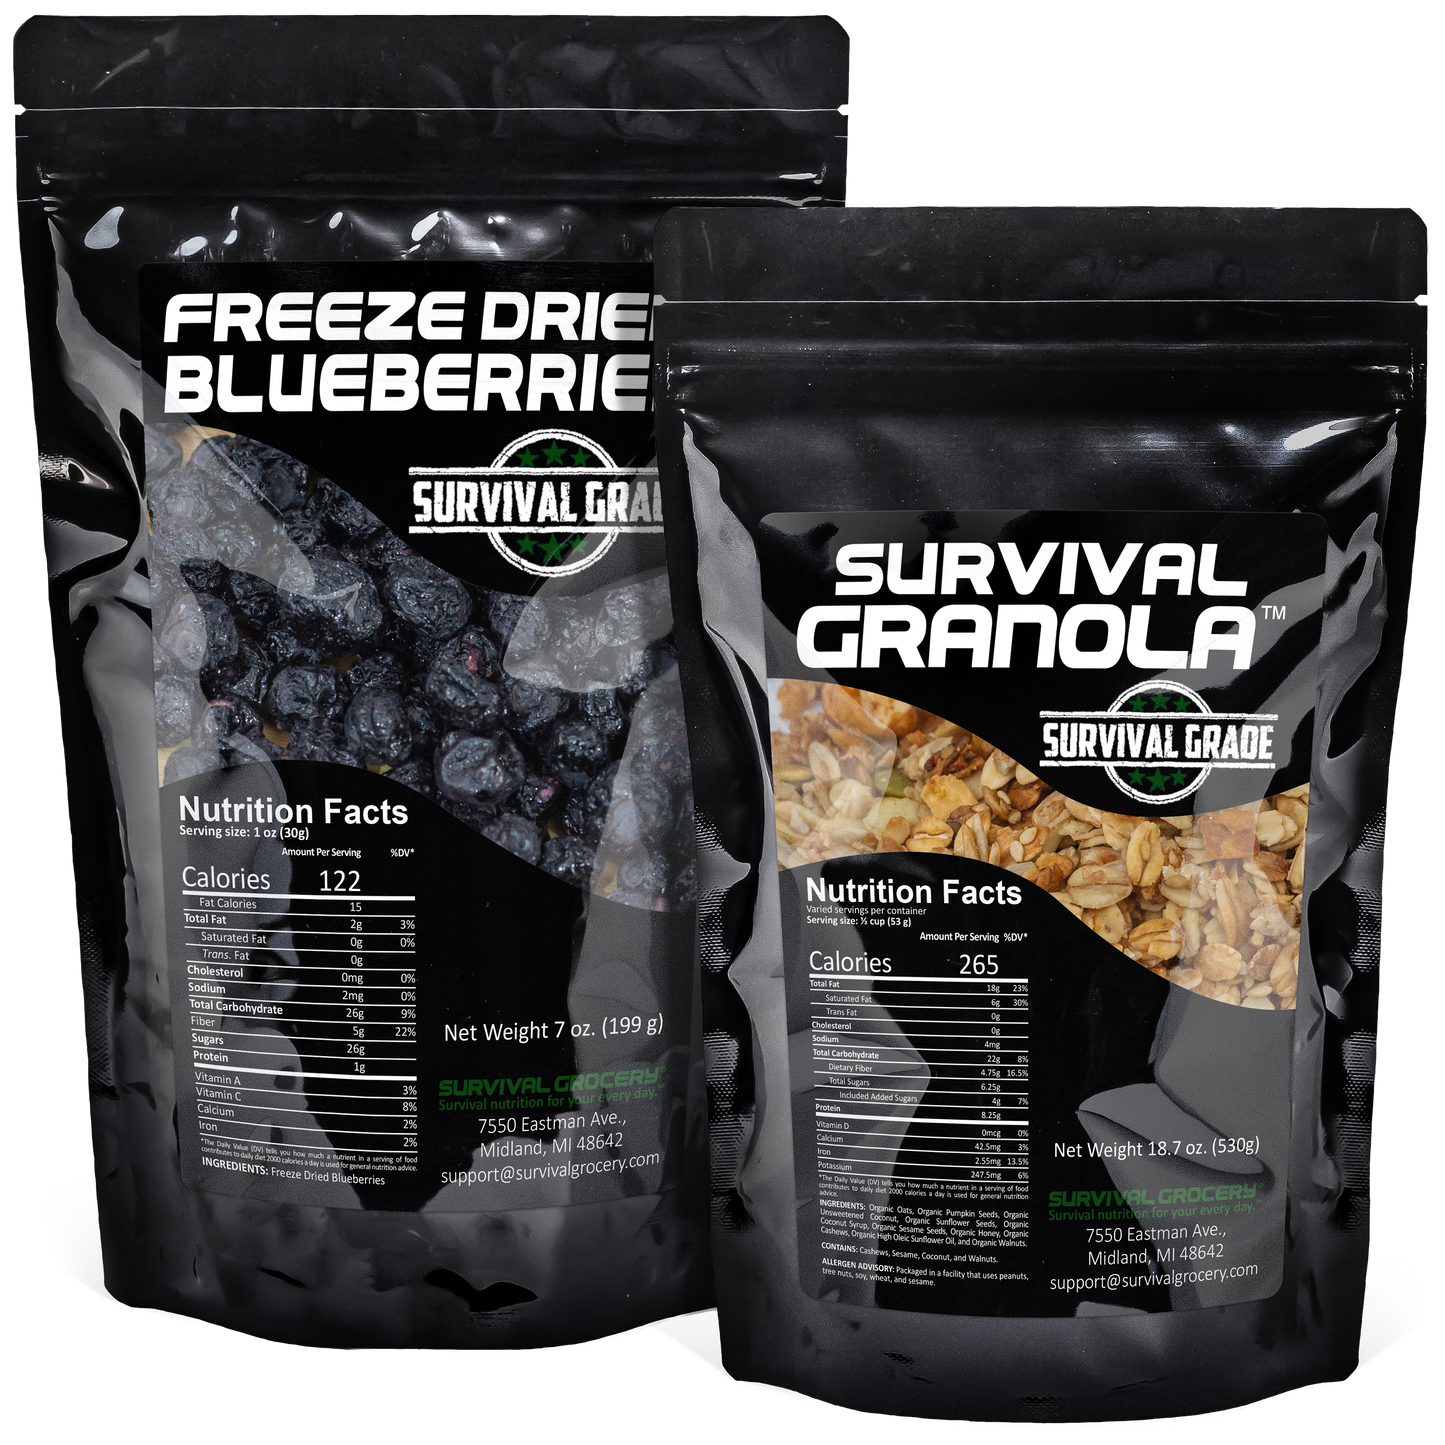 Survival Granola™ - Organic, Gluten Free, and Non-GMO